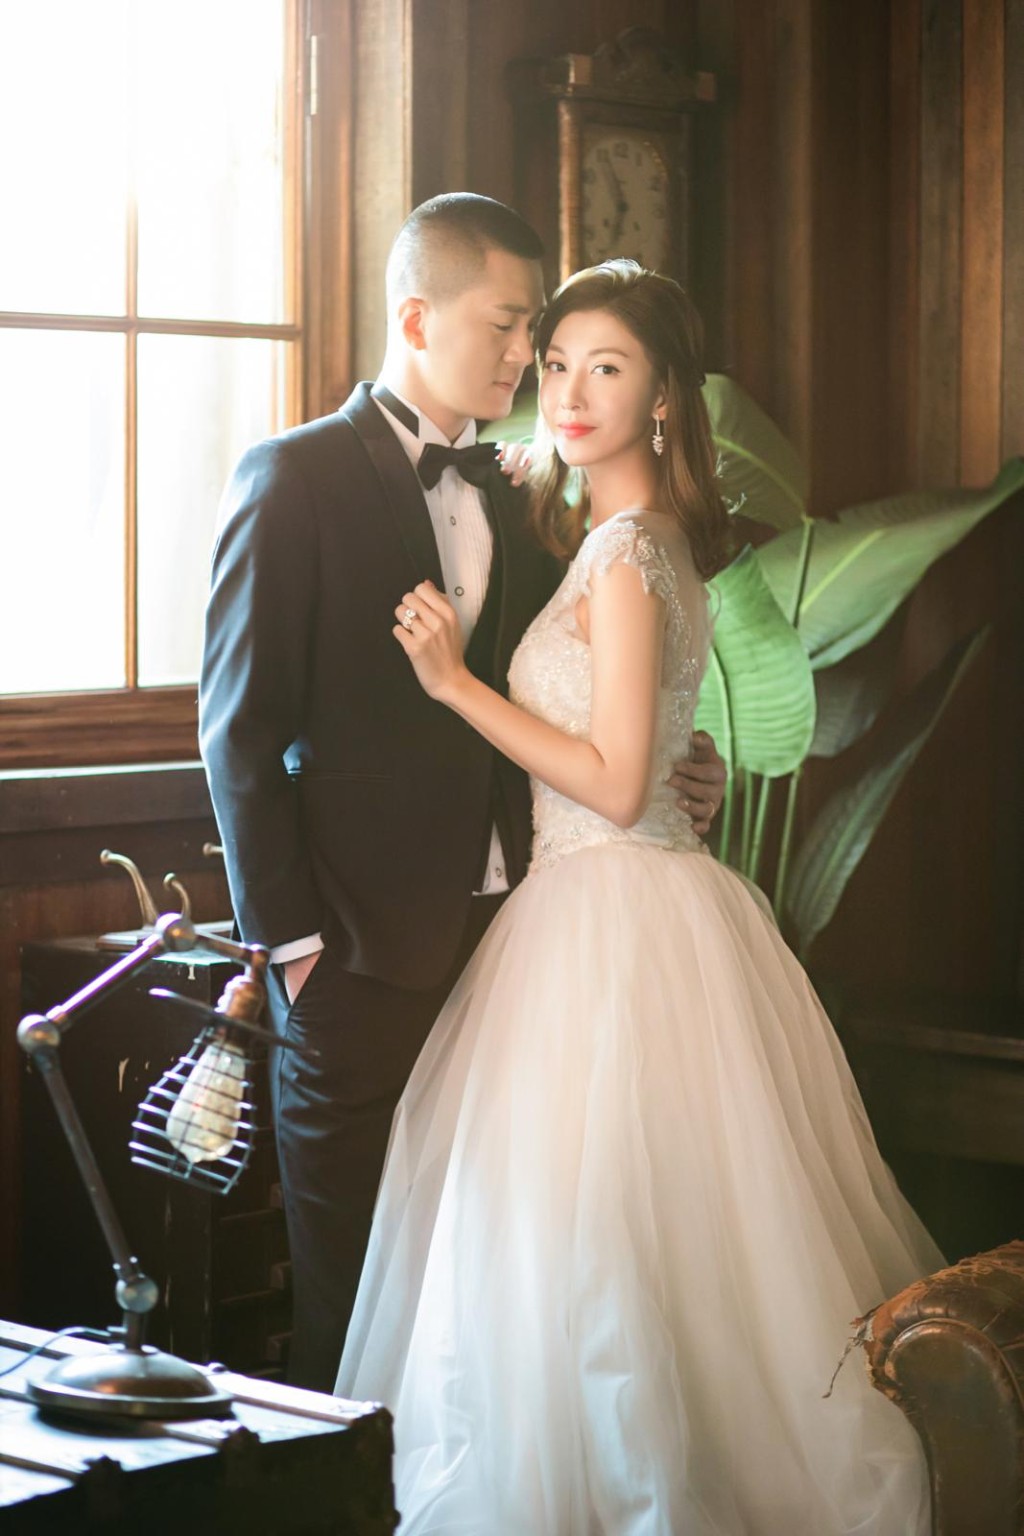 李彩華在2019年2月宣布與從事鋼鐵生意的內地商人黃彥書（Eric）結婚。